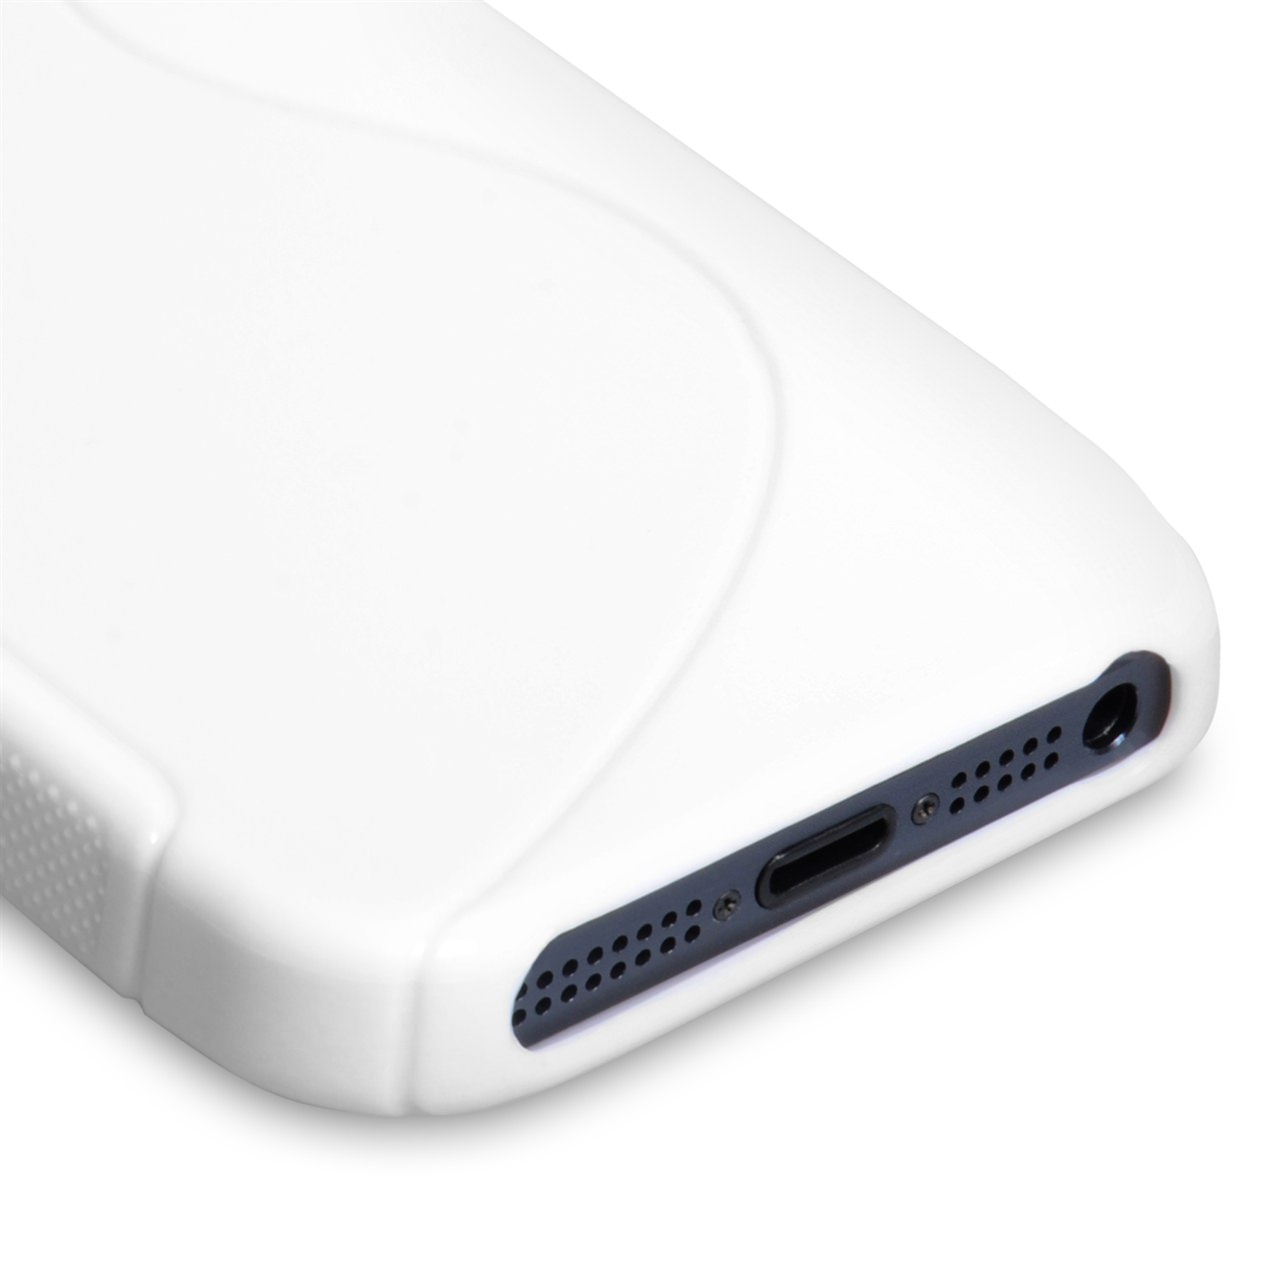 Caseflex iPhone 5-5S S-Line Gel Case - White